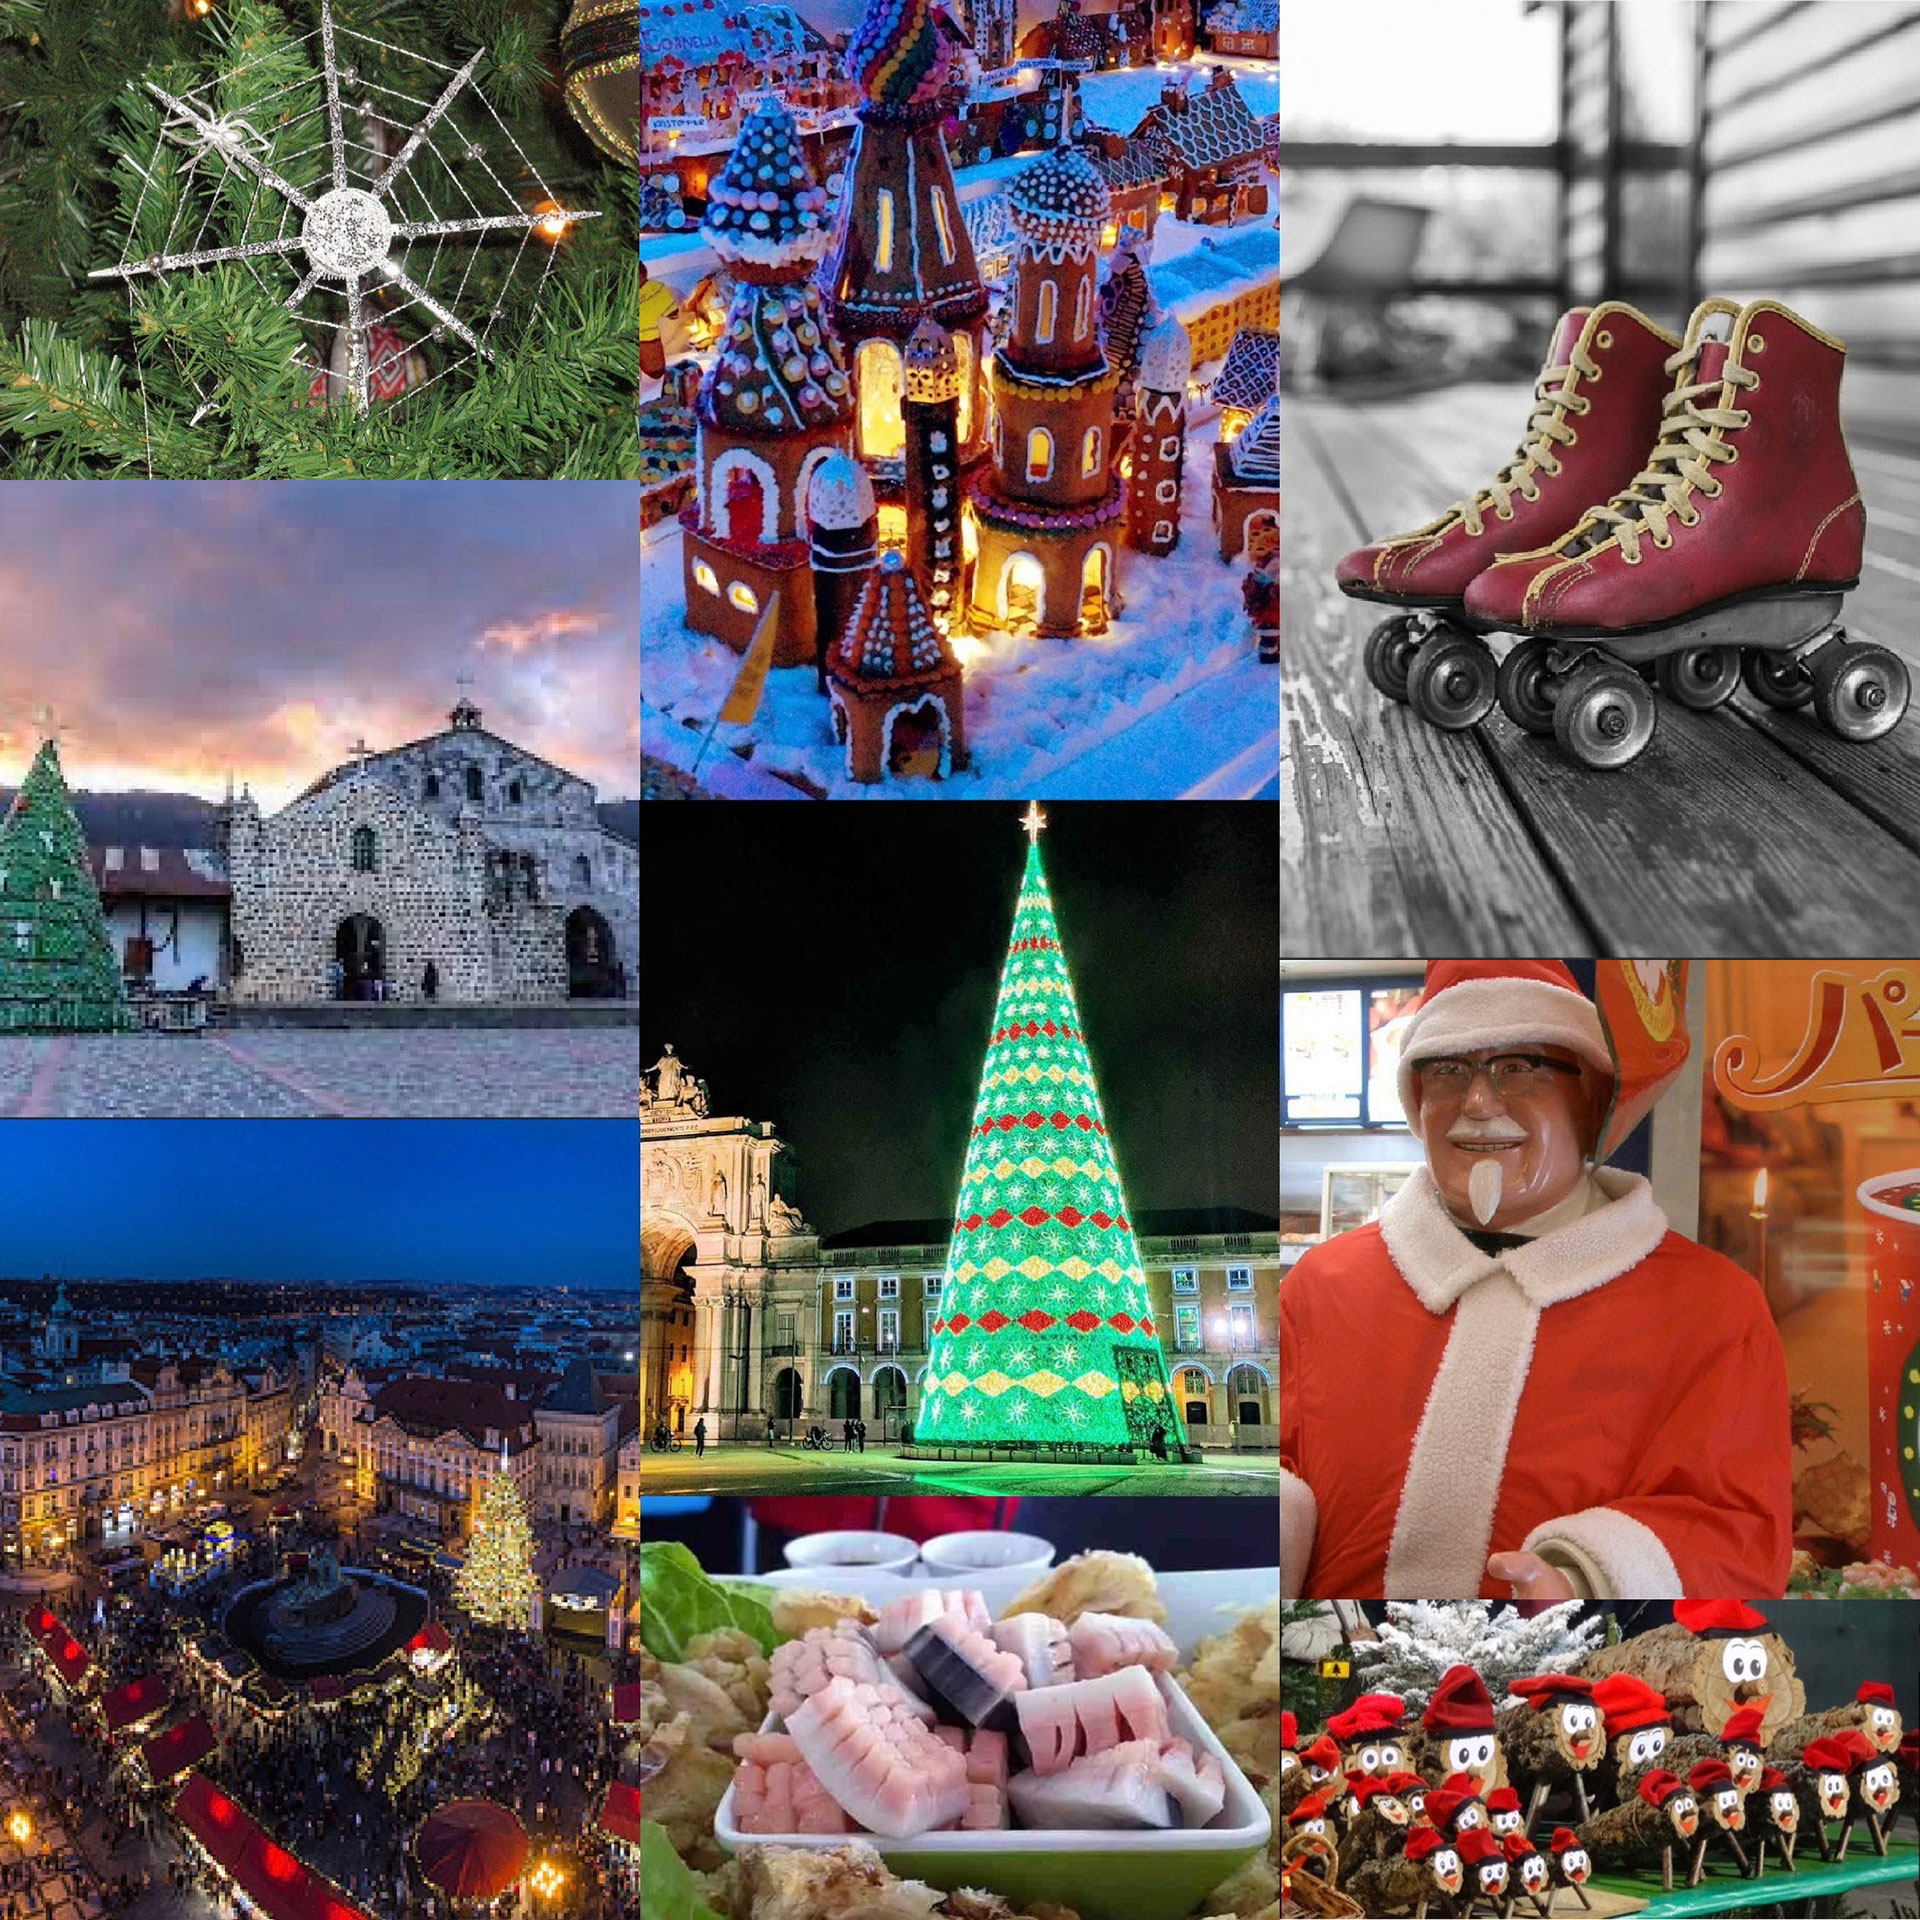 Además del rito universal de Papá Noel y el árbol navideño, existen mitos y costumbres muy curiosas vinculadas a las Fiestas de fin de año